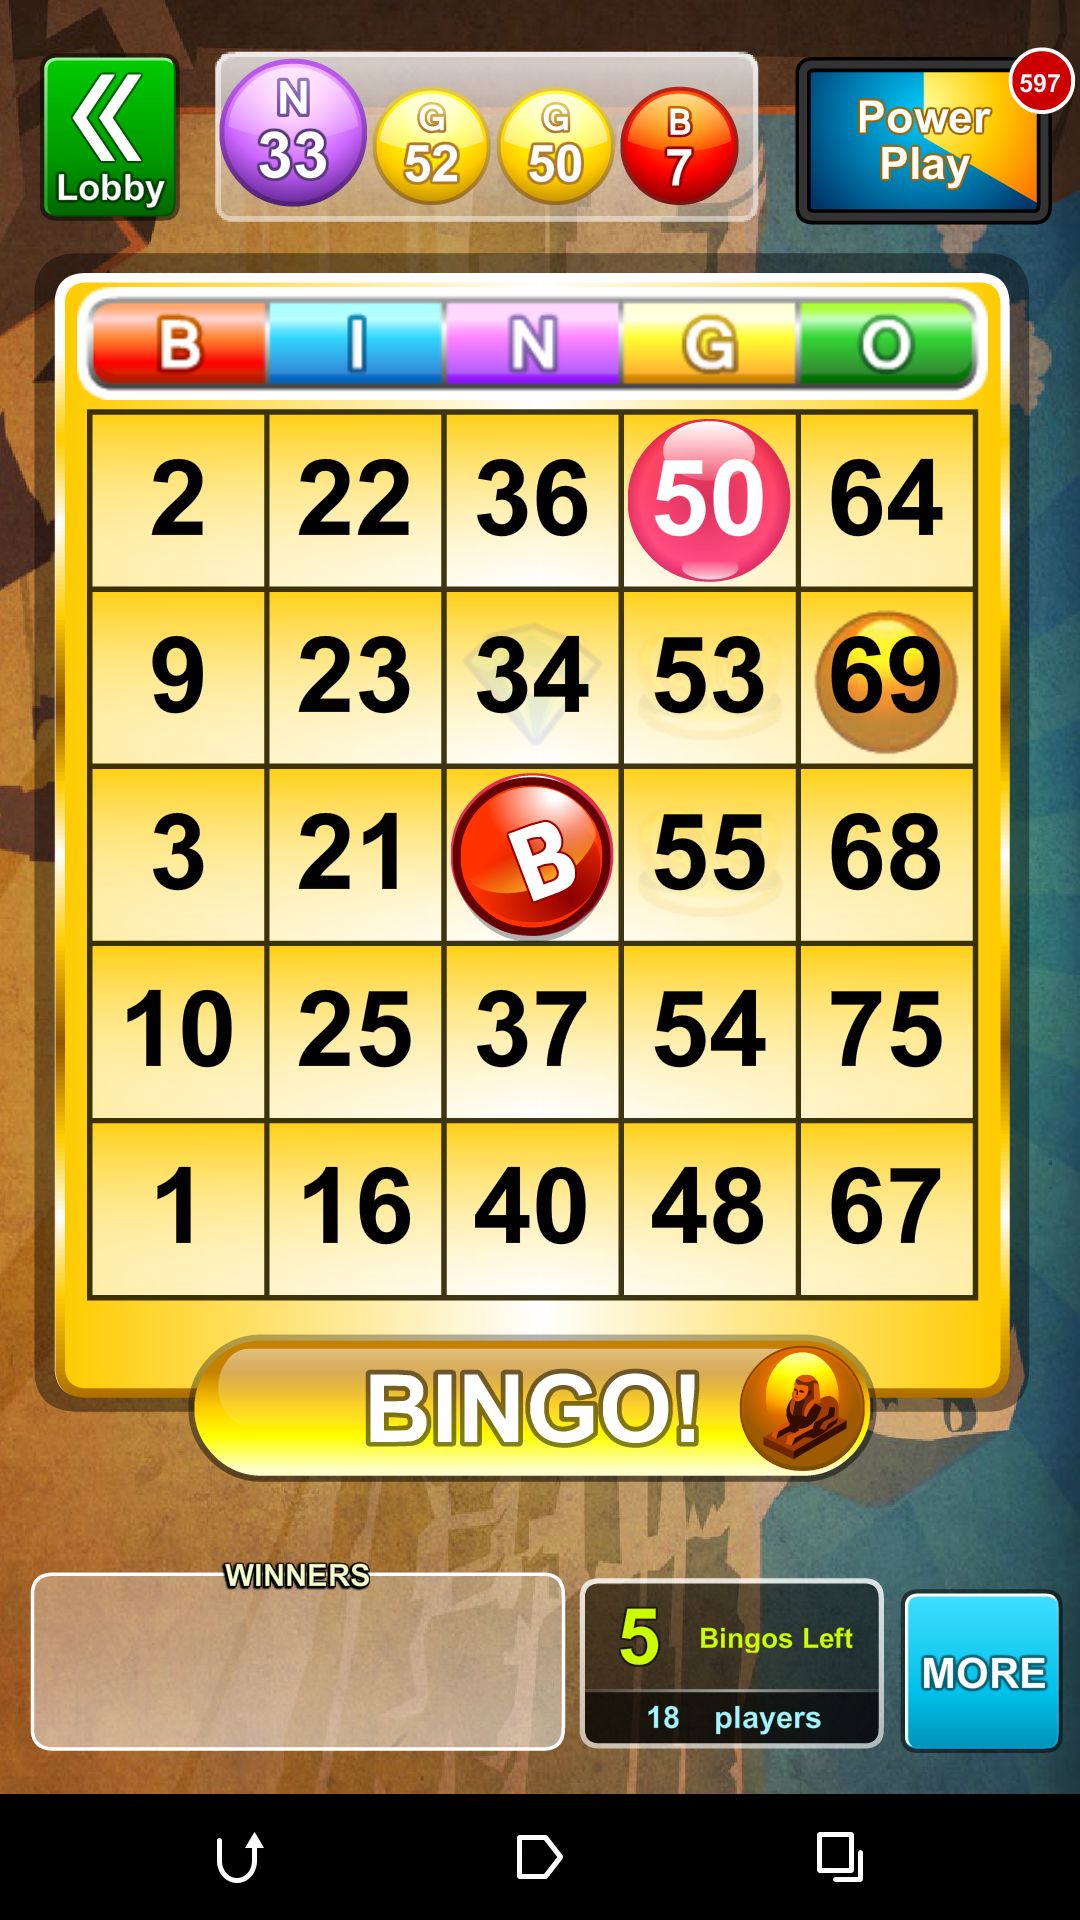 bingo bash unlimited chips link